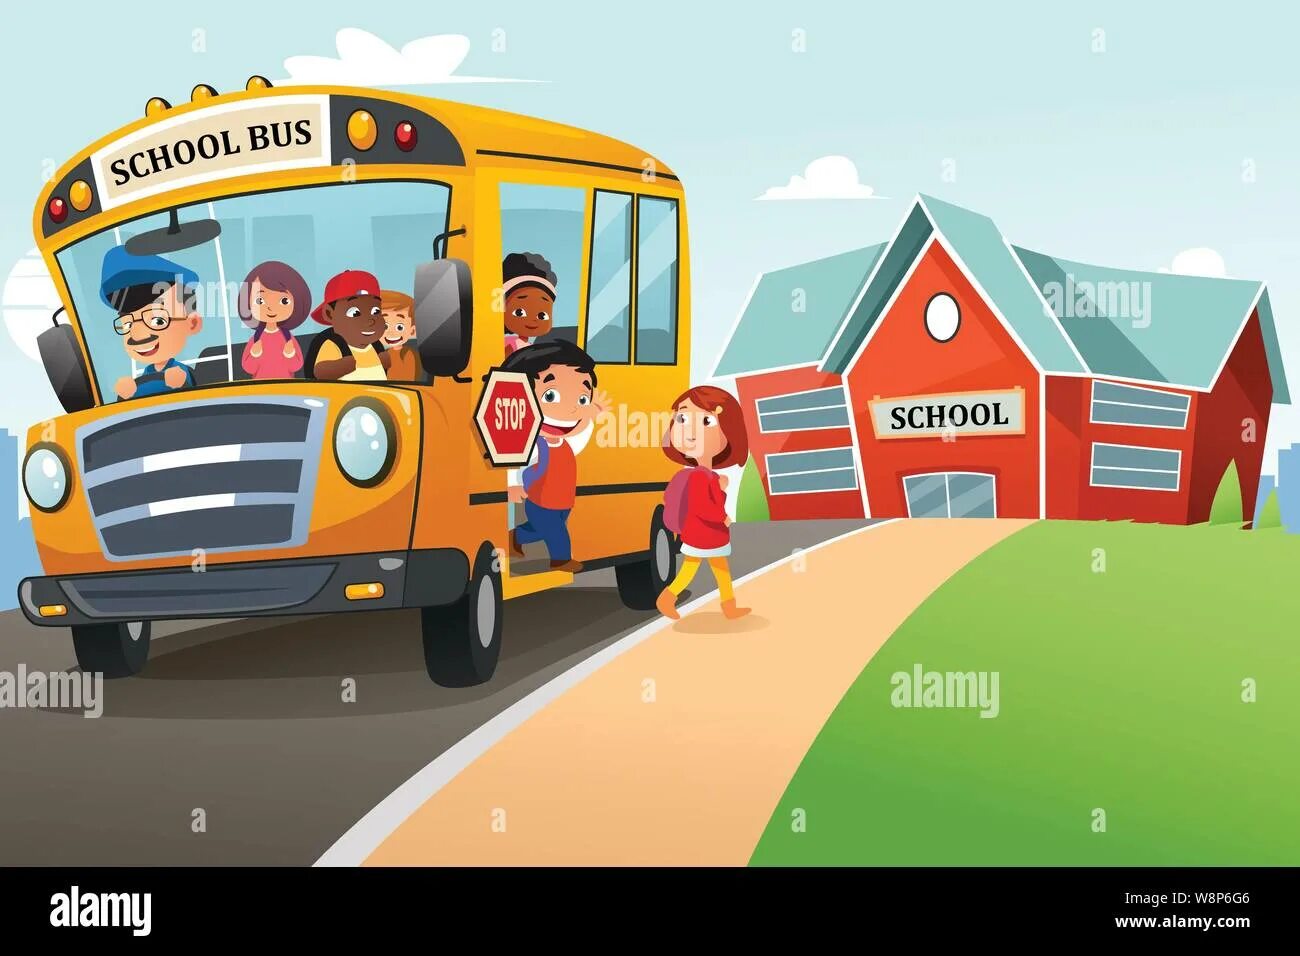 Get off the car. Дети выходят из автобуса. Автобус с детьми мультяшный. Автобус с людьми вектор. Дети виходят из автобус.